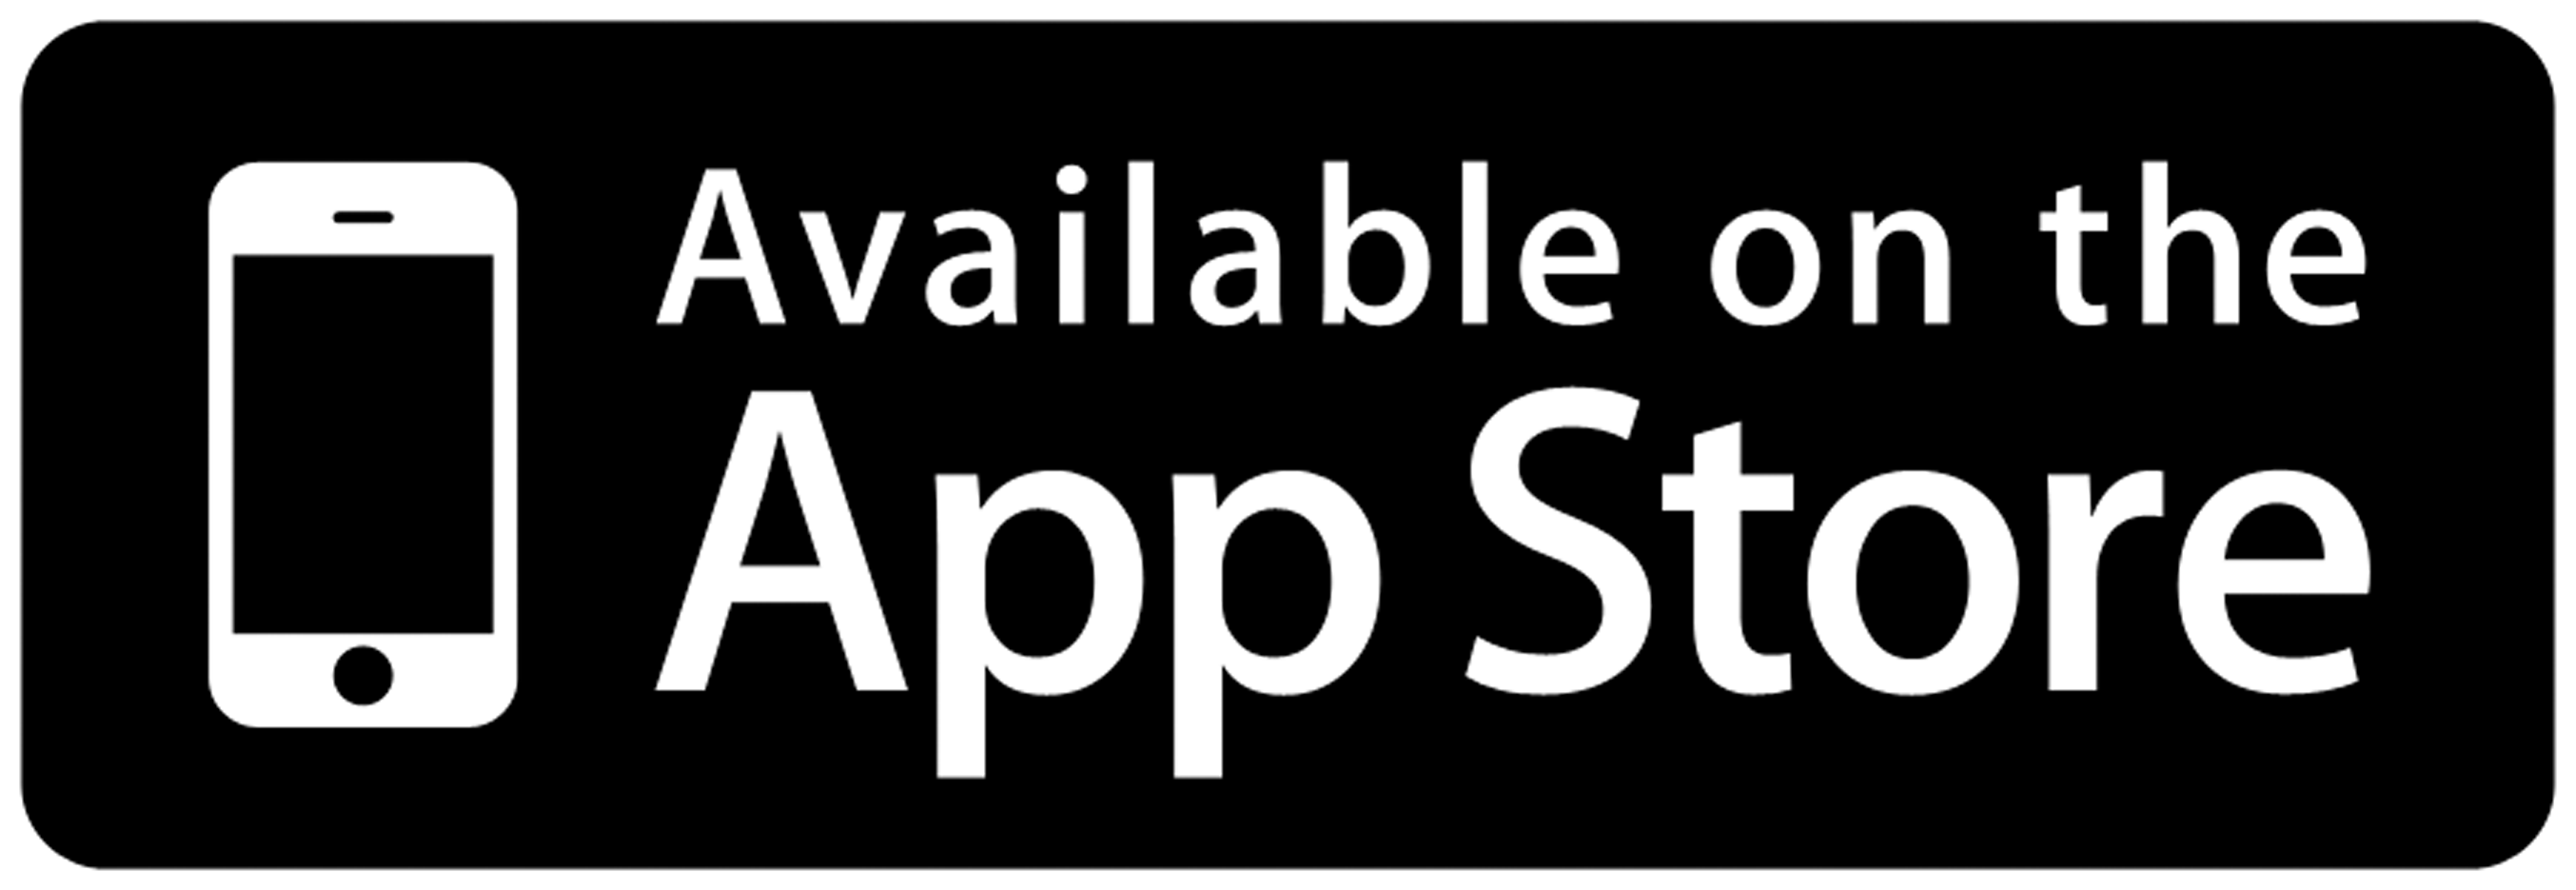 APPSTORE иконка. Apple Store значок. App Store приложения. Доступно в app Store. Номер ап стор